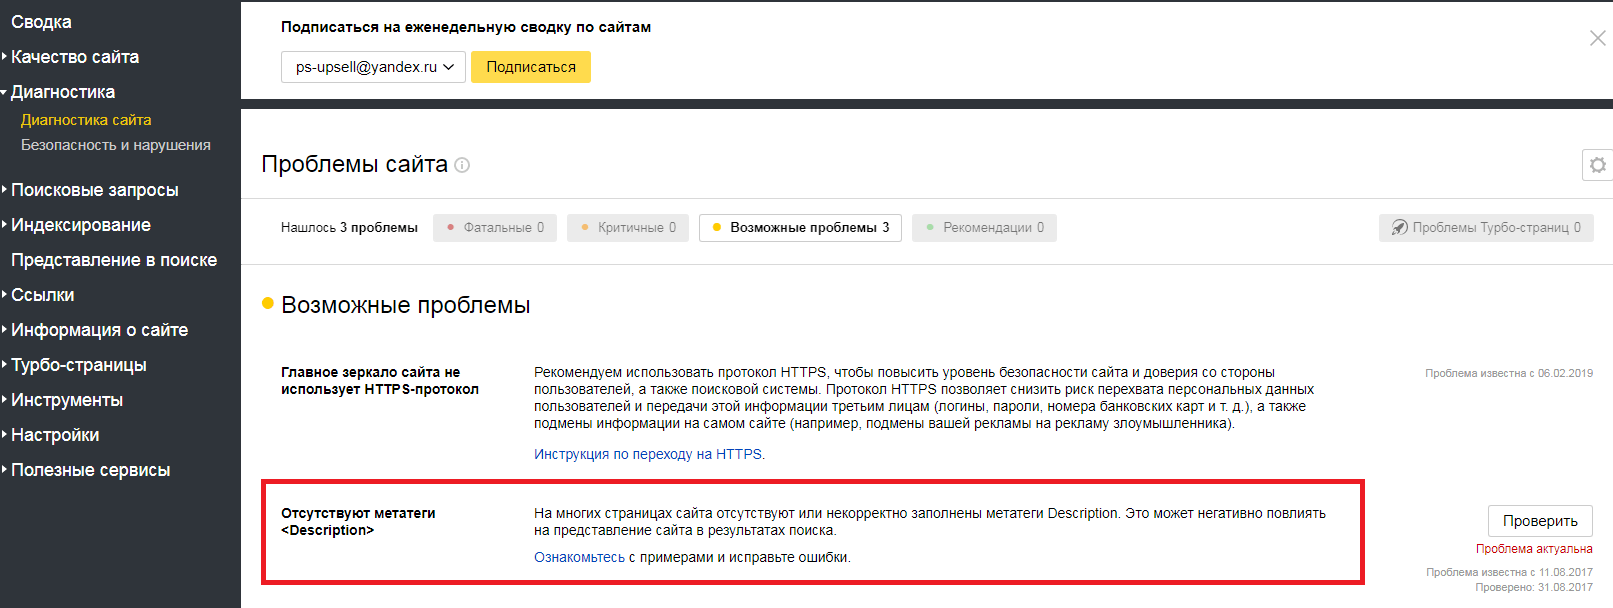 Отсутствуют метатеги Description в Яндекс.Вебмастере